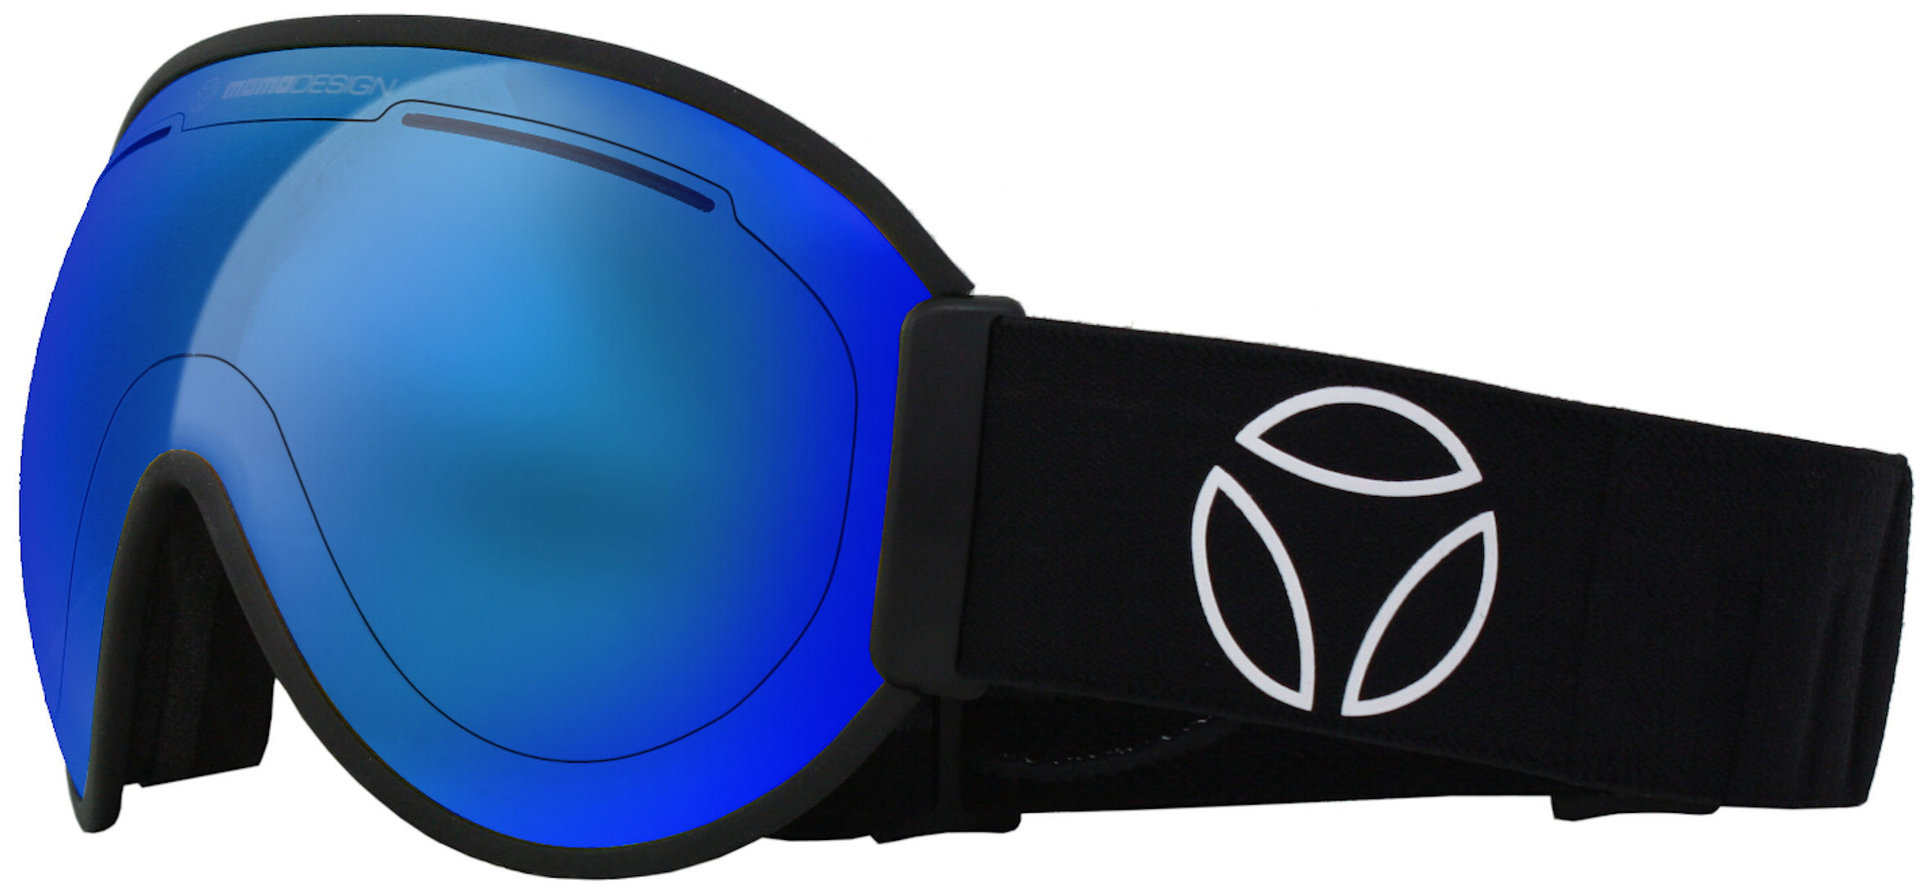  Falcon Ski Goggles, Blue, Blue, Size One Size